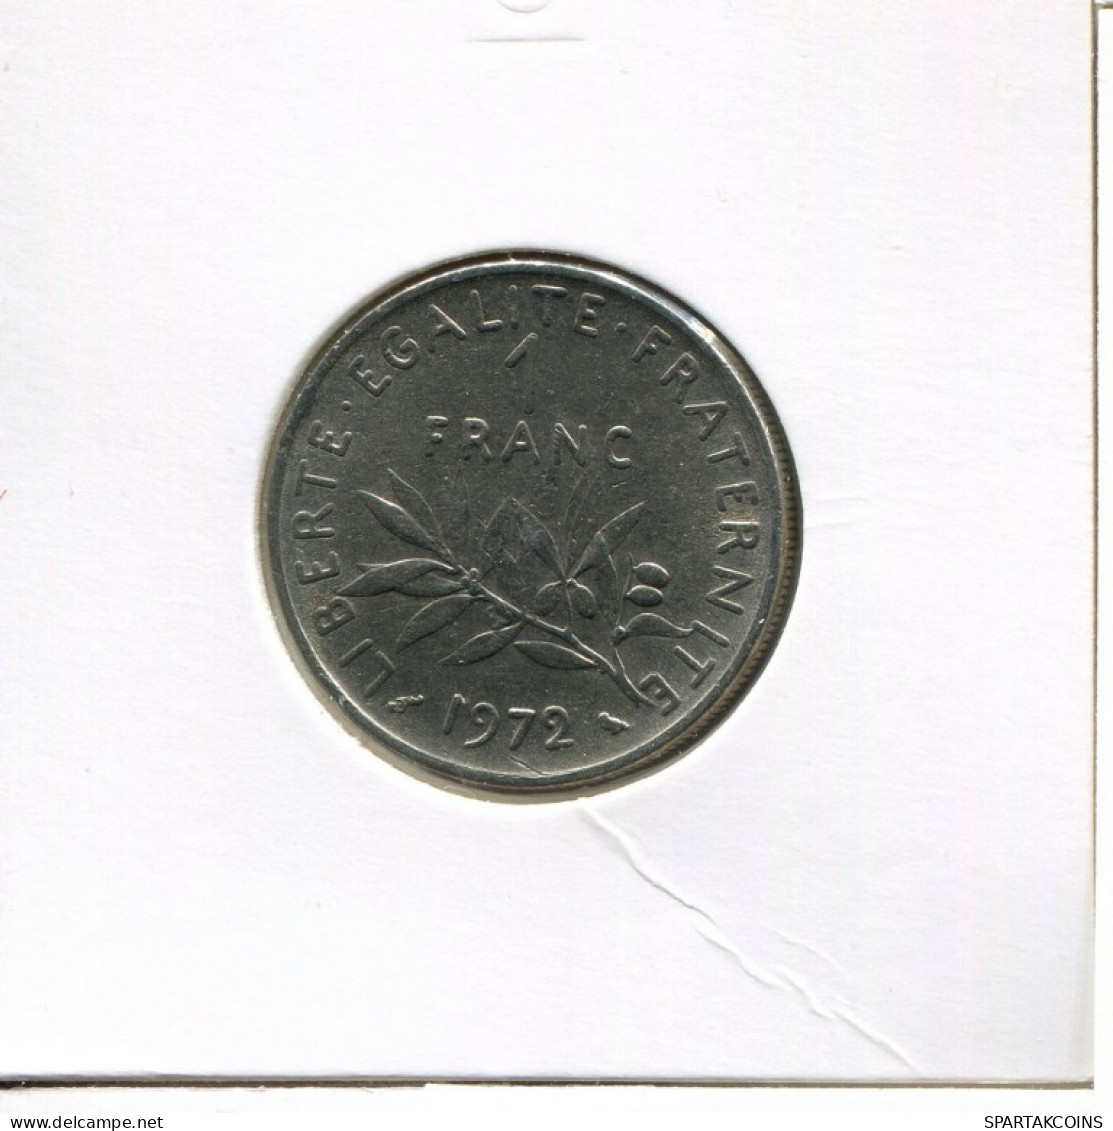 1 FRANC 1972 FRANCE Coin French Coin #AK559.U.A - 1 Franc